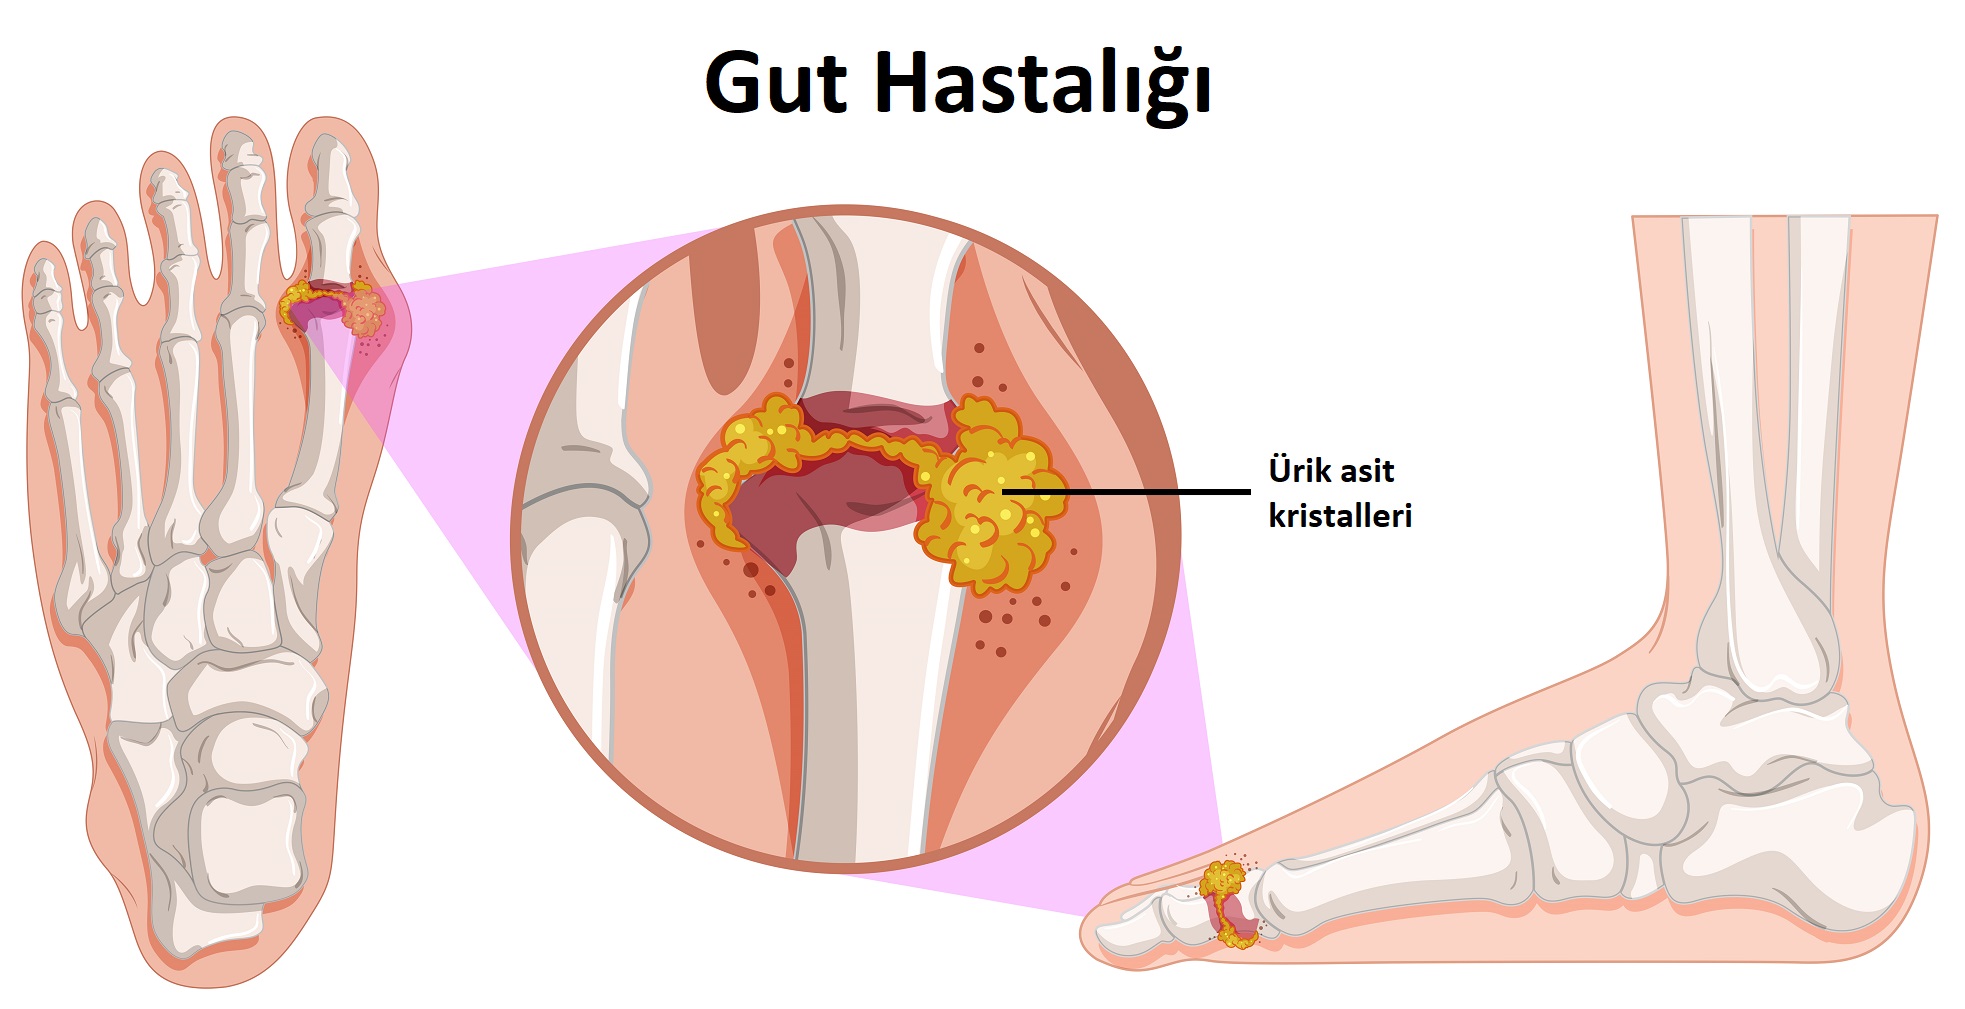 Gut hastalığı nedir? Belirtileri ve tedavi yöntemleri nelerdir? | Anadolu Sağlık Merkezi